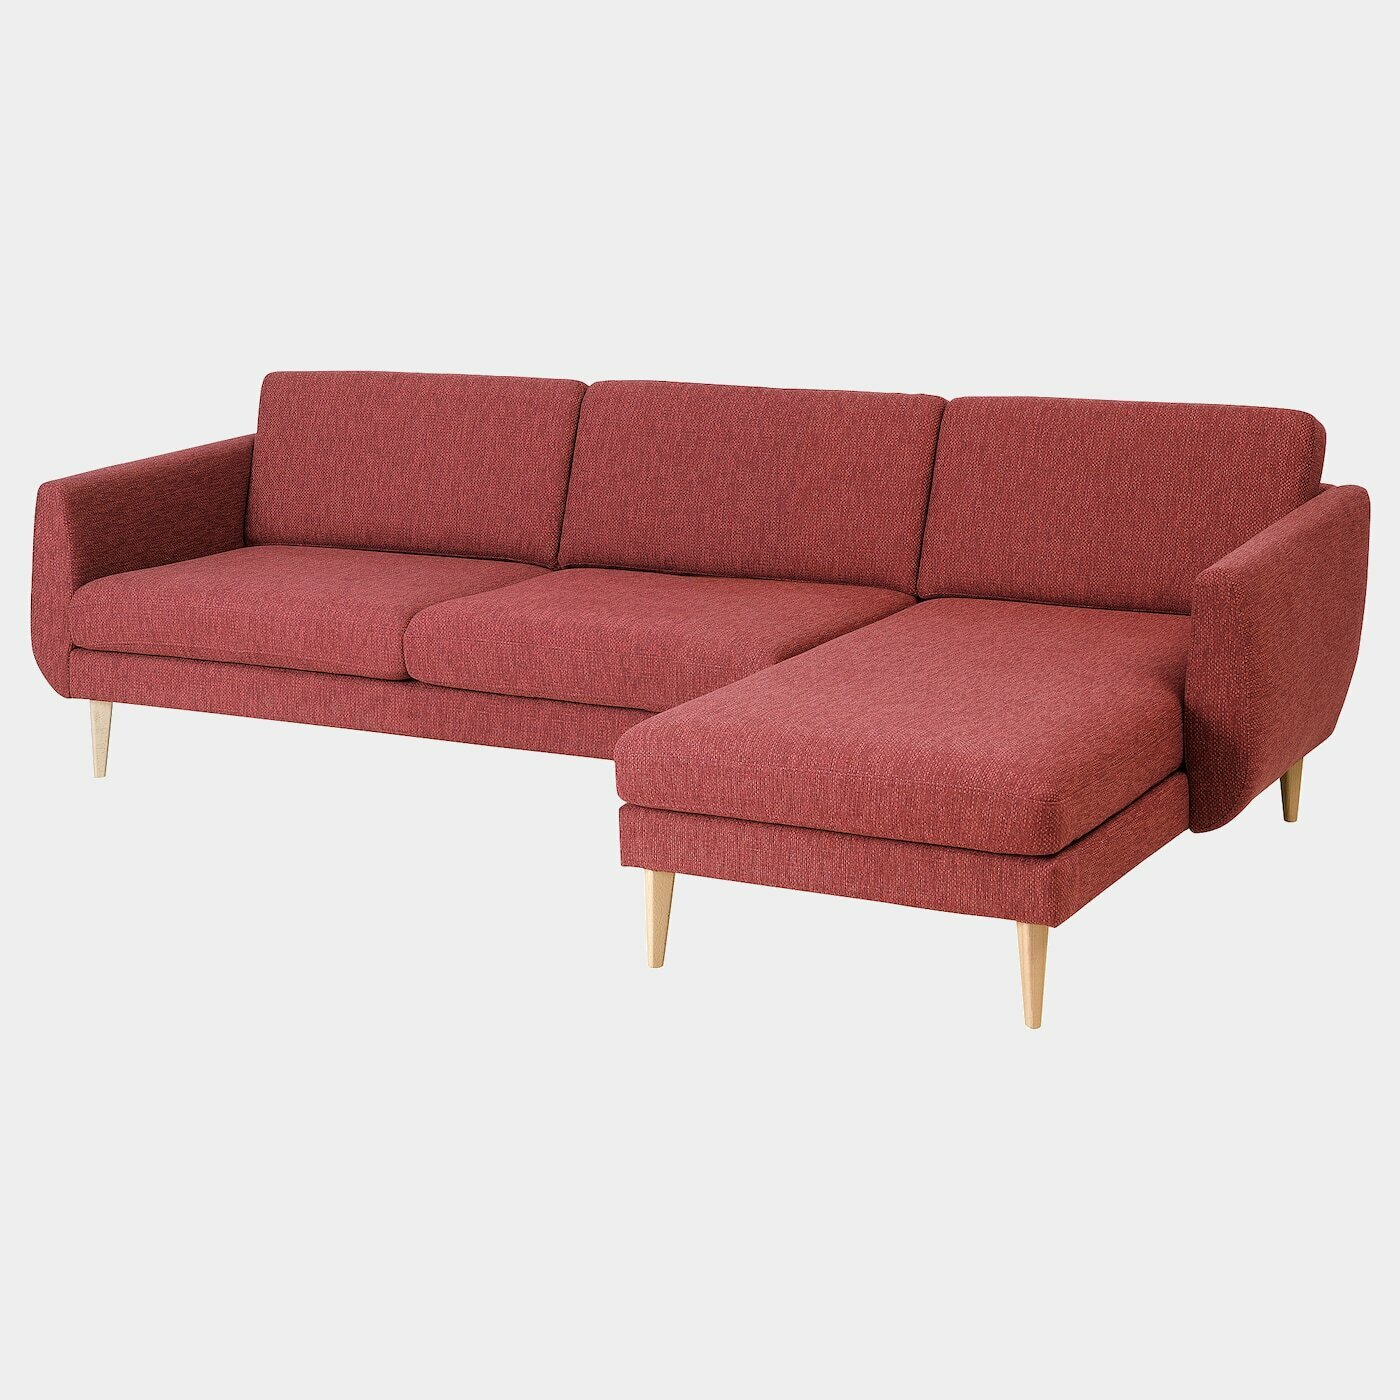 SMEDSTORP 4er-Sofa mit Récamiere  -  - Möbel Ideen für dein Zuhause von Home Trends. Möbel Trends von Social Media Influencer für dein Skandi Zuhause.